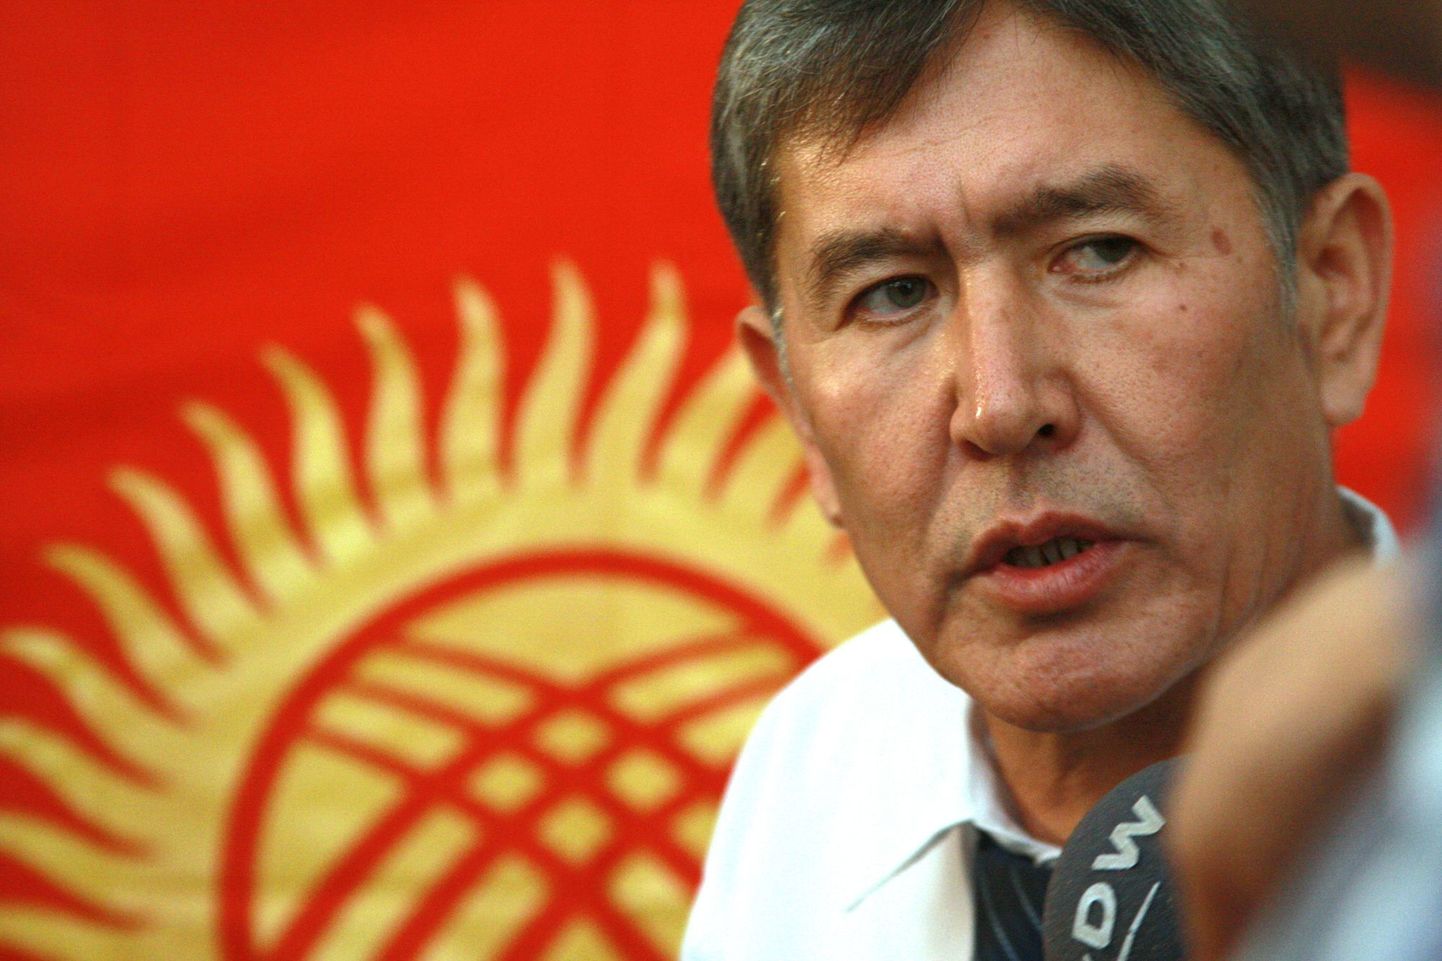 Kõrgõzstani vahevalitsuse esimene asepeaminister Almazbek Atambajev aastatagusel fotol.